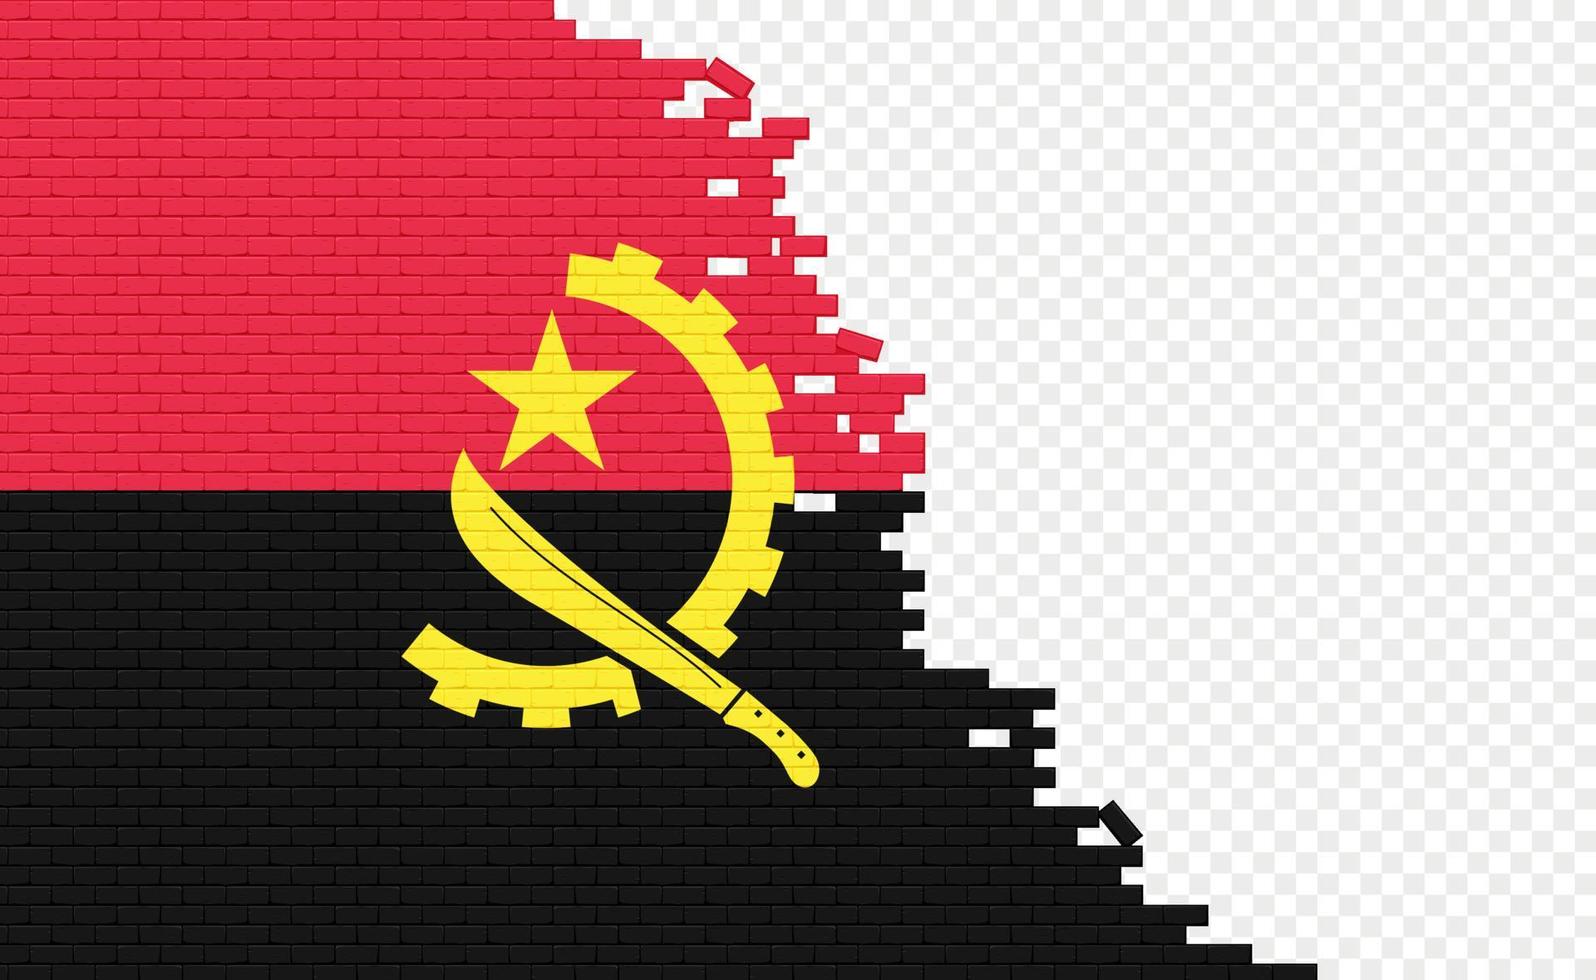 angola flagga på bruten tegel vägg. tömma flagga fält av annan Land. Land jämförelse. lätt redigering och vektor i grupper.